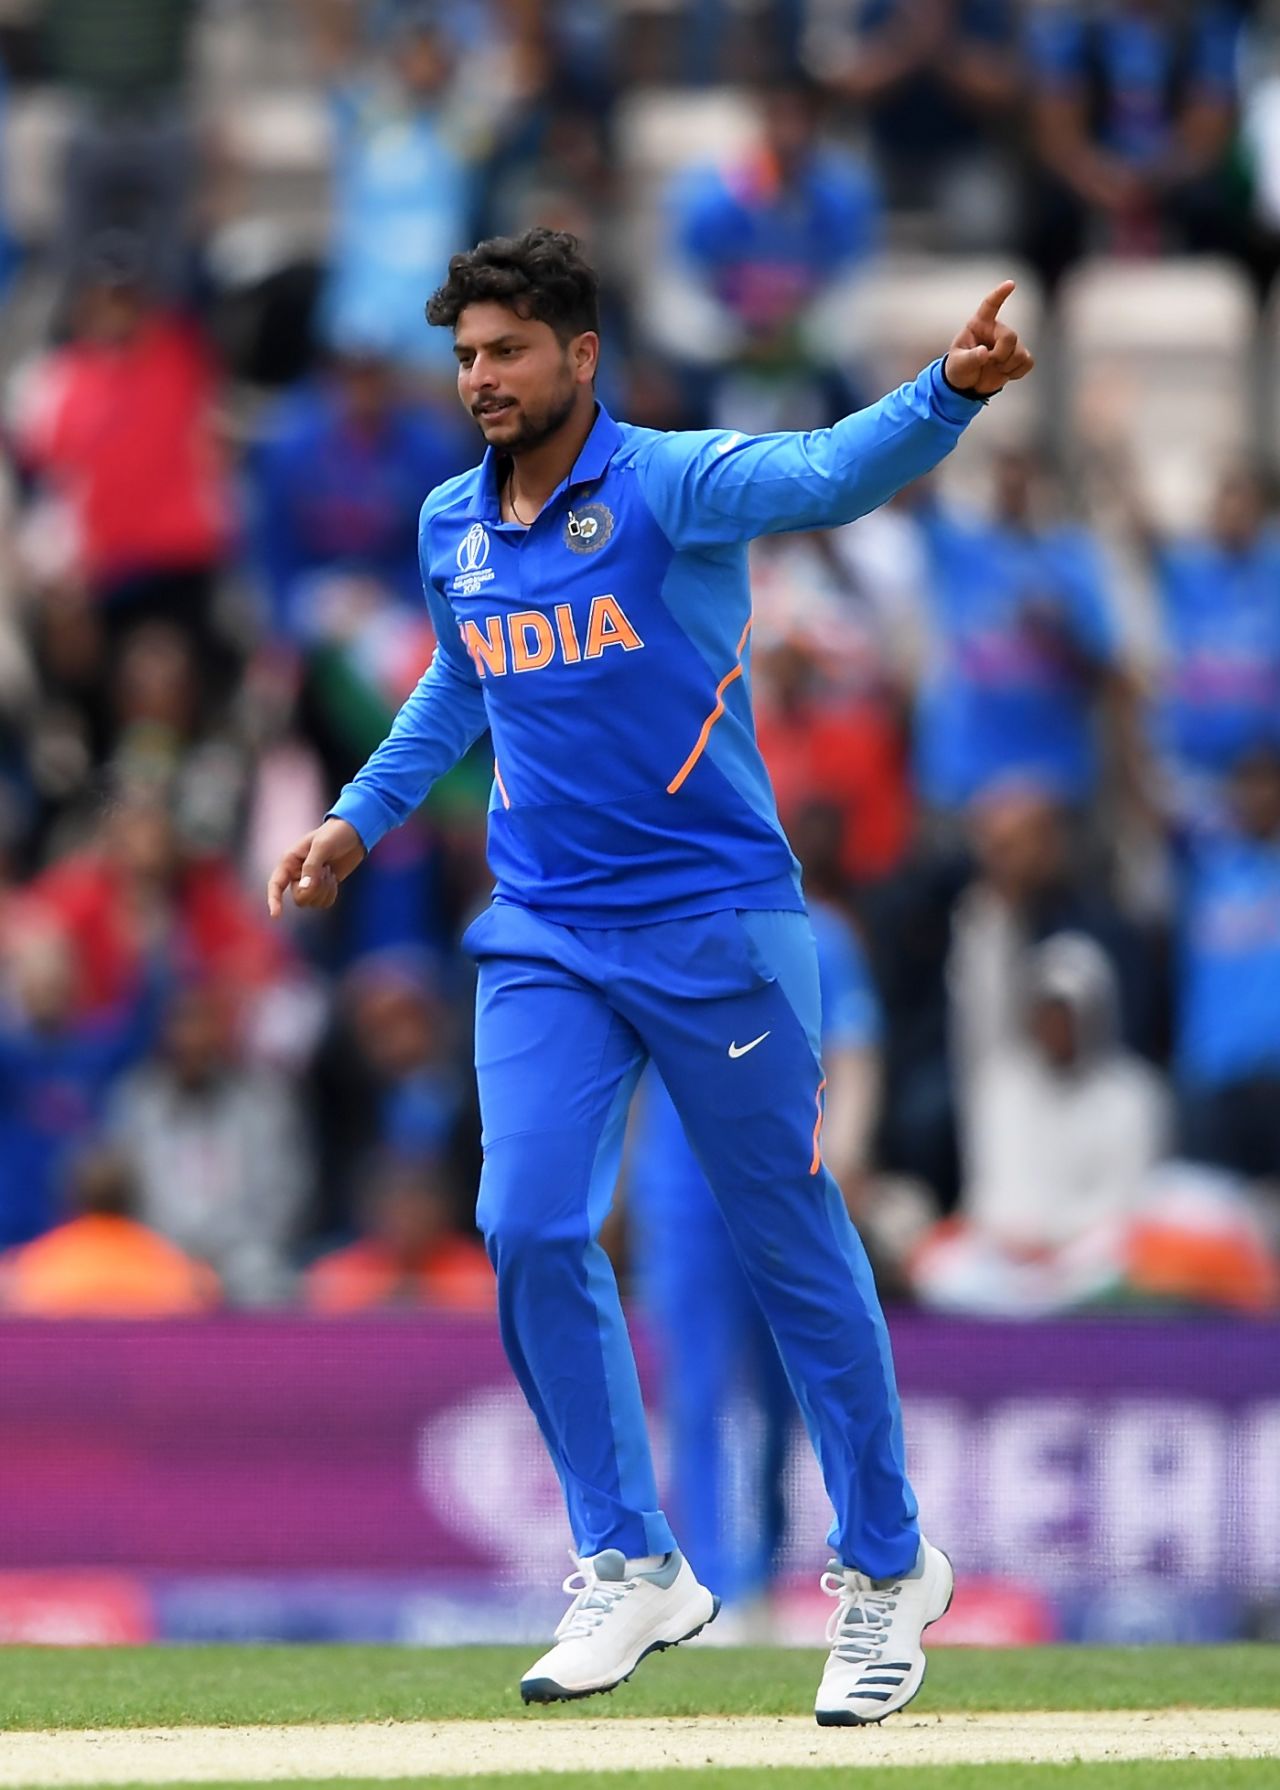 Kuldeep Yadav celebrates dismissing JP Duminy, India v South Africa, Southampton, World Cup 2019, June 5, 2019